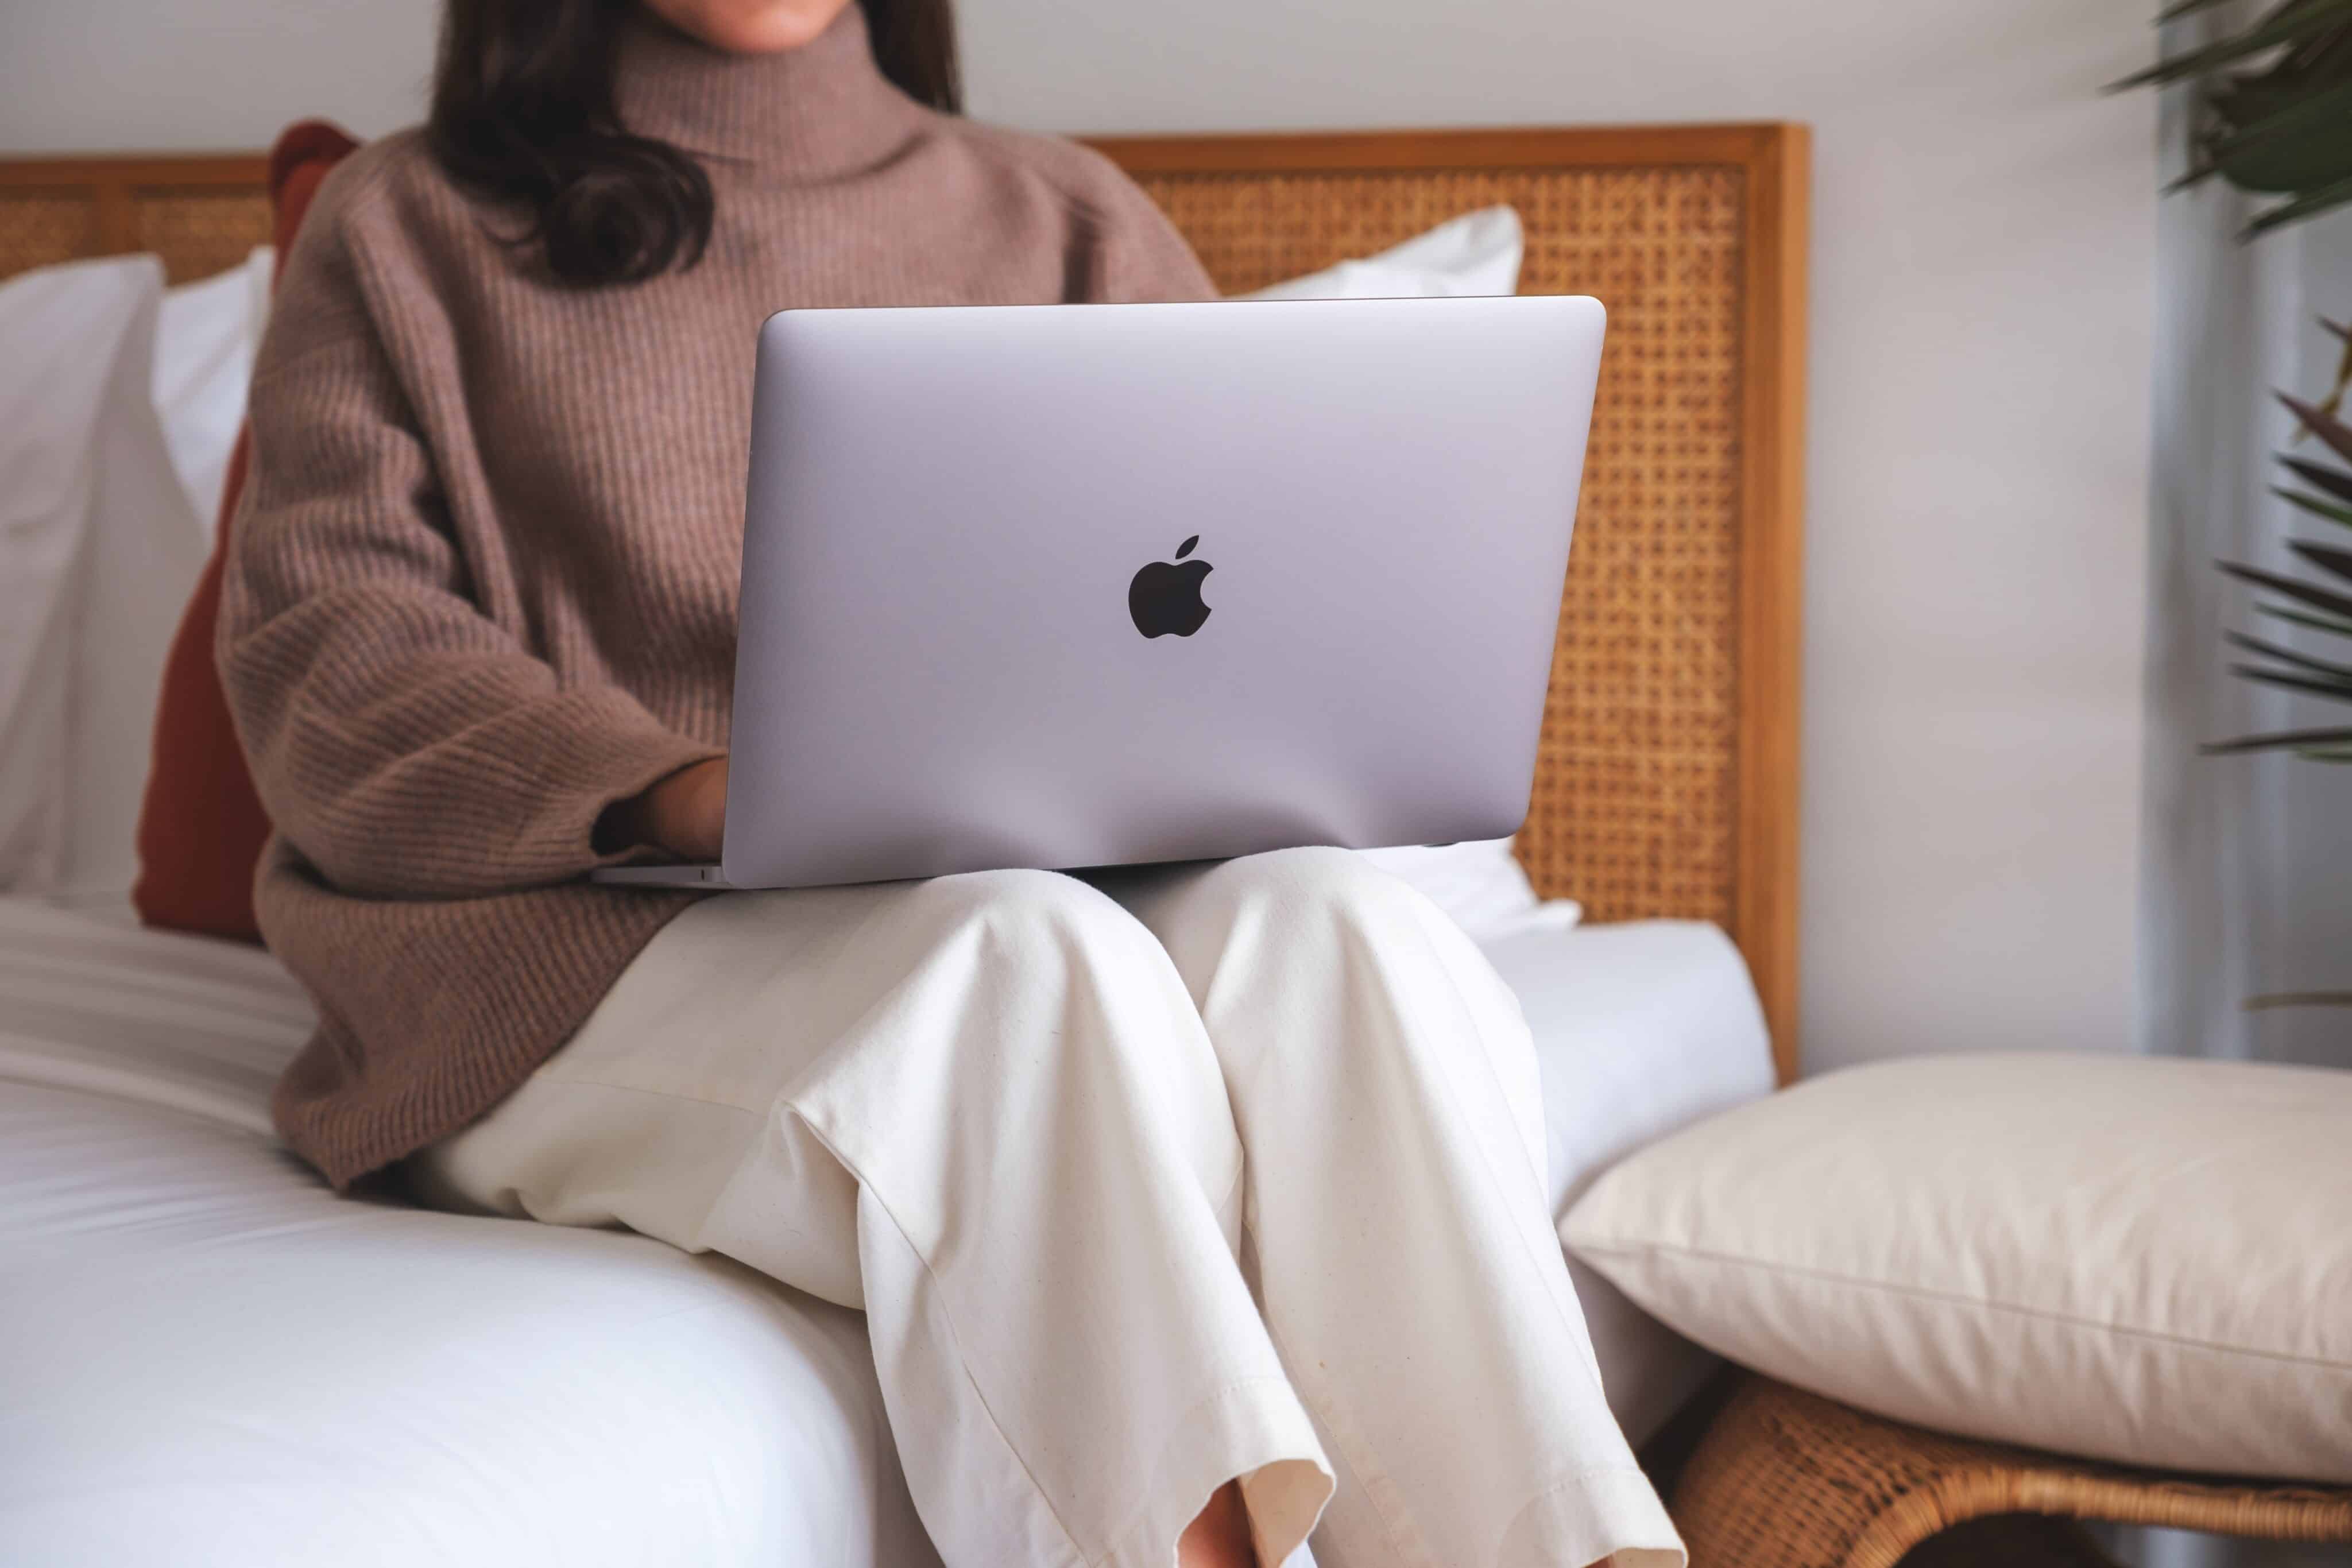 Mulher usando um MacBook Air/Pro na cama